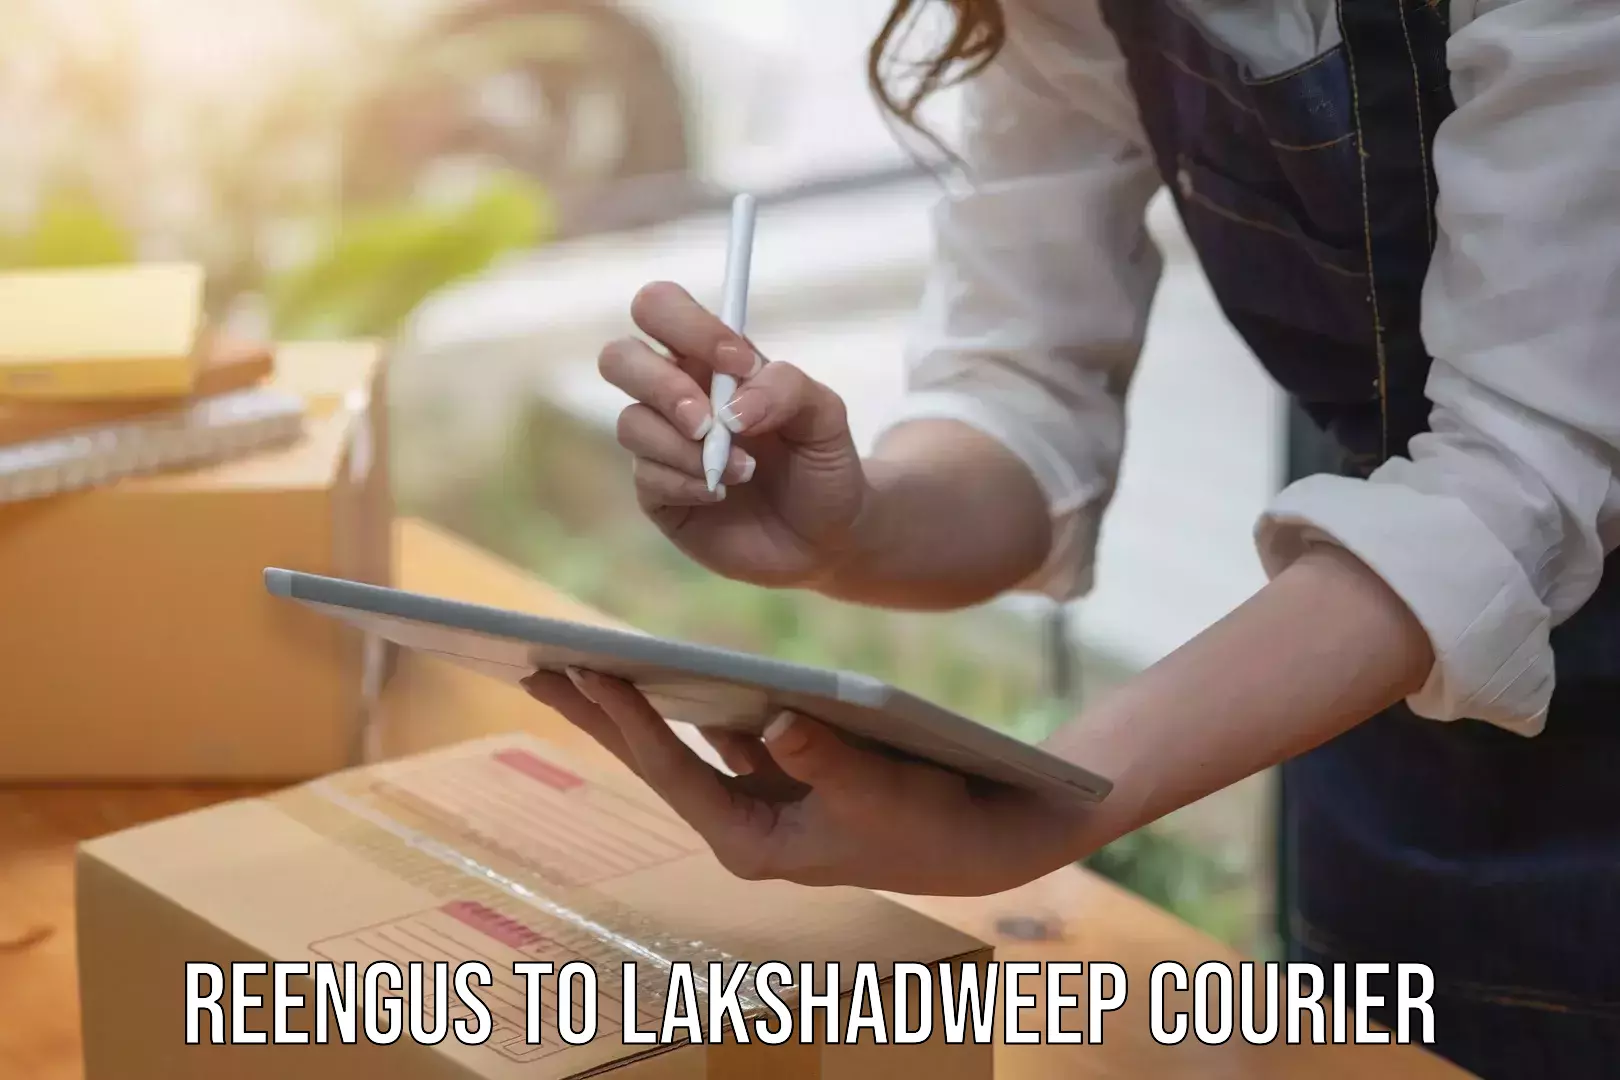 High-priority parcel service Reengus to Lakshadweep